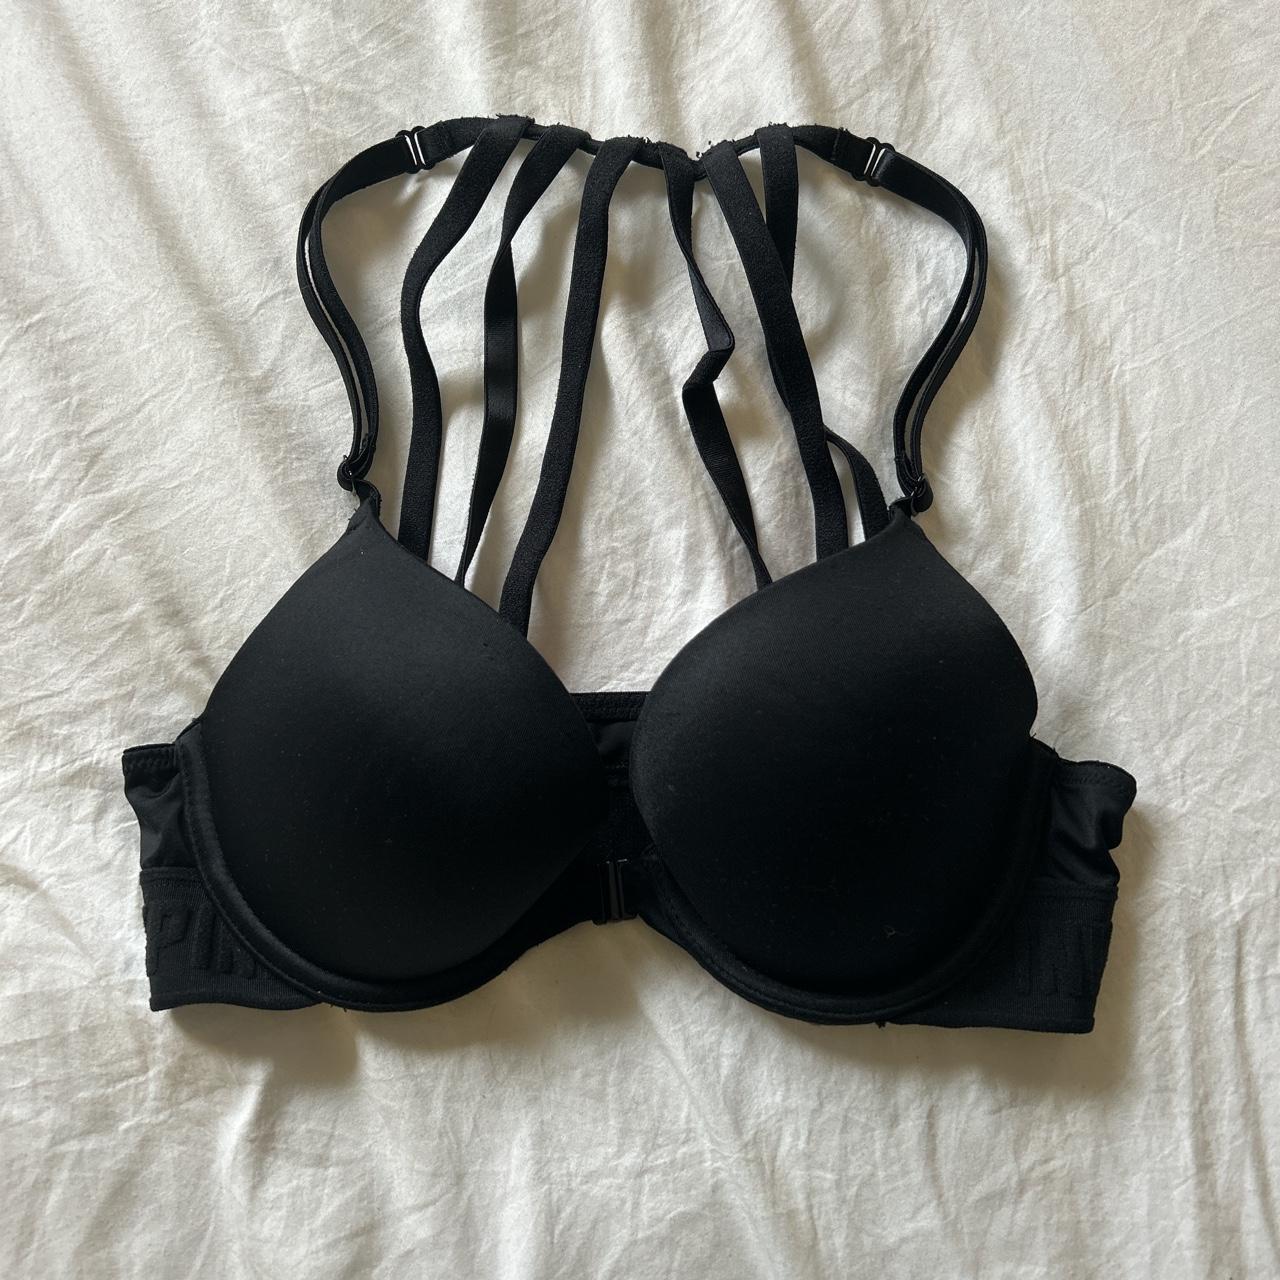 VICTORIA'S SECRET SPORTS BRA Size 34C. This bra is - Depop